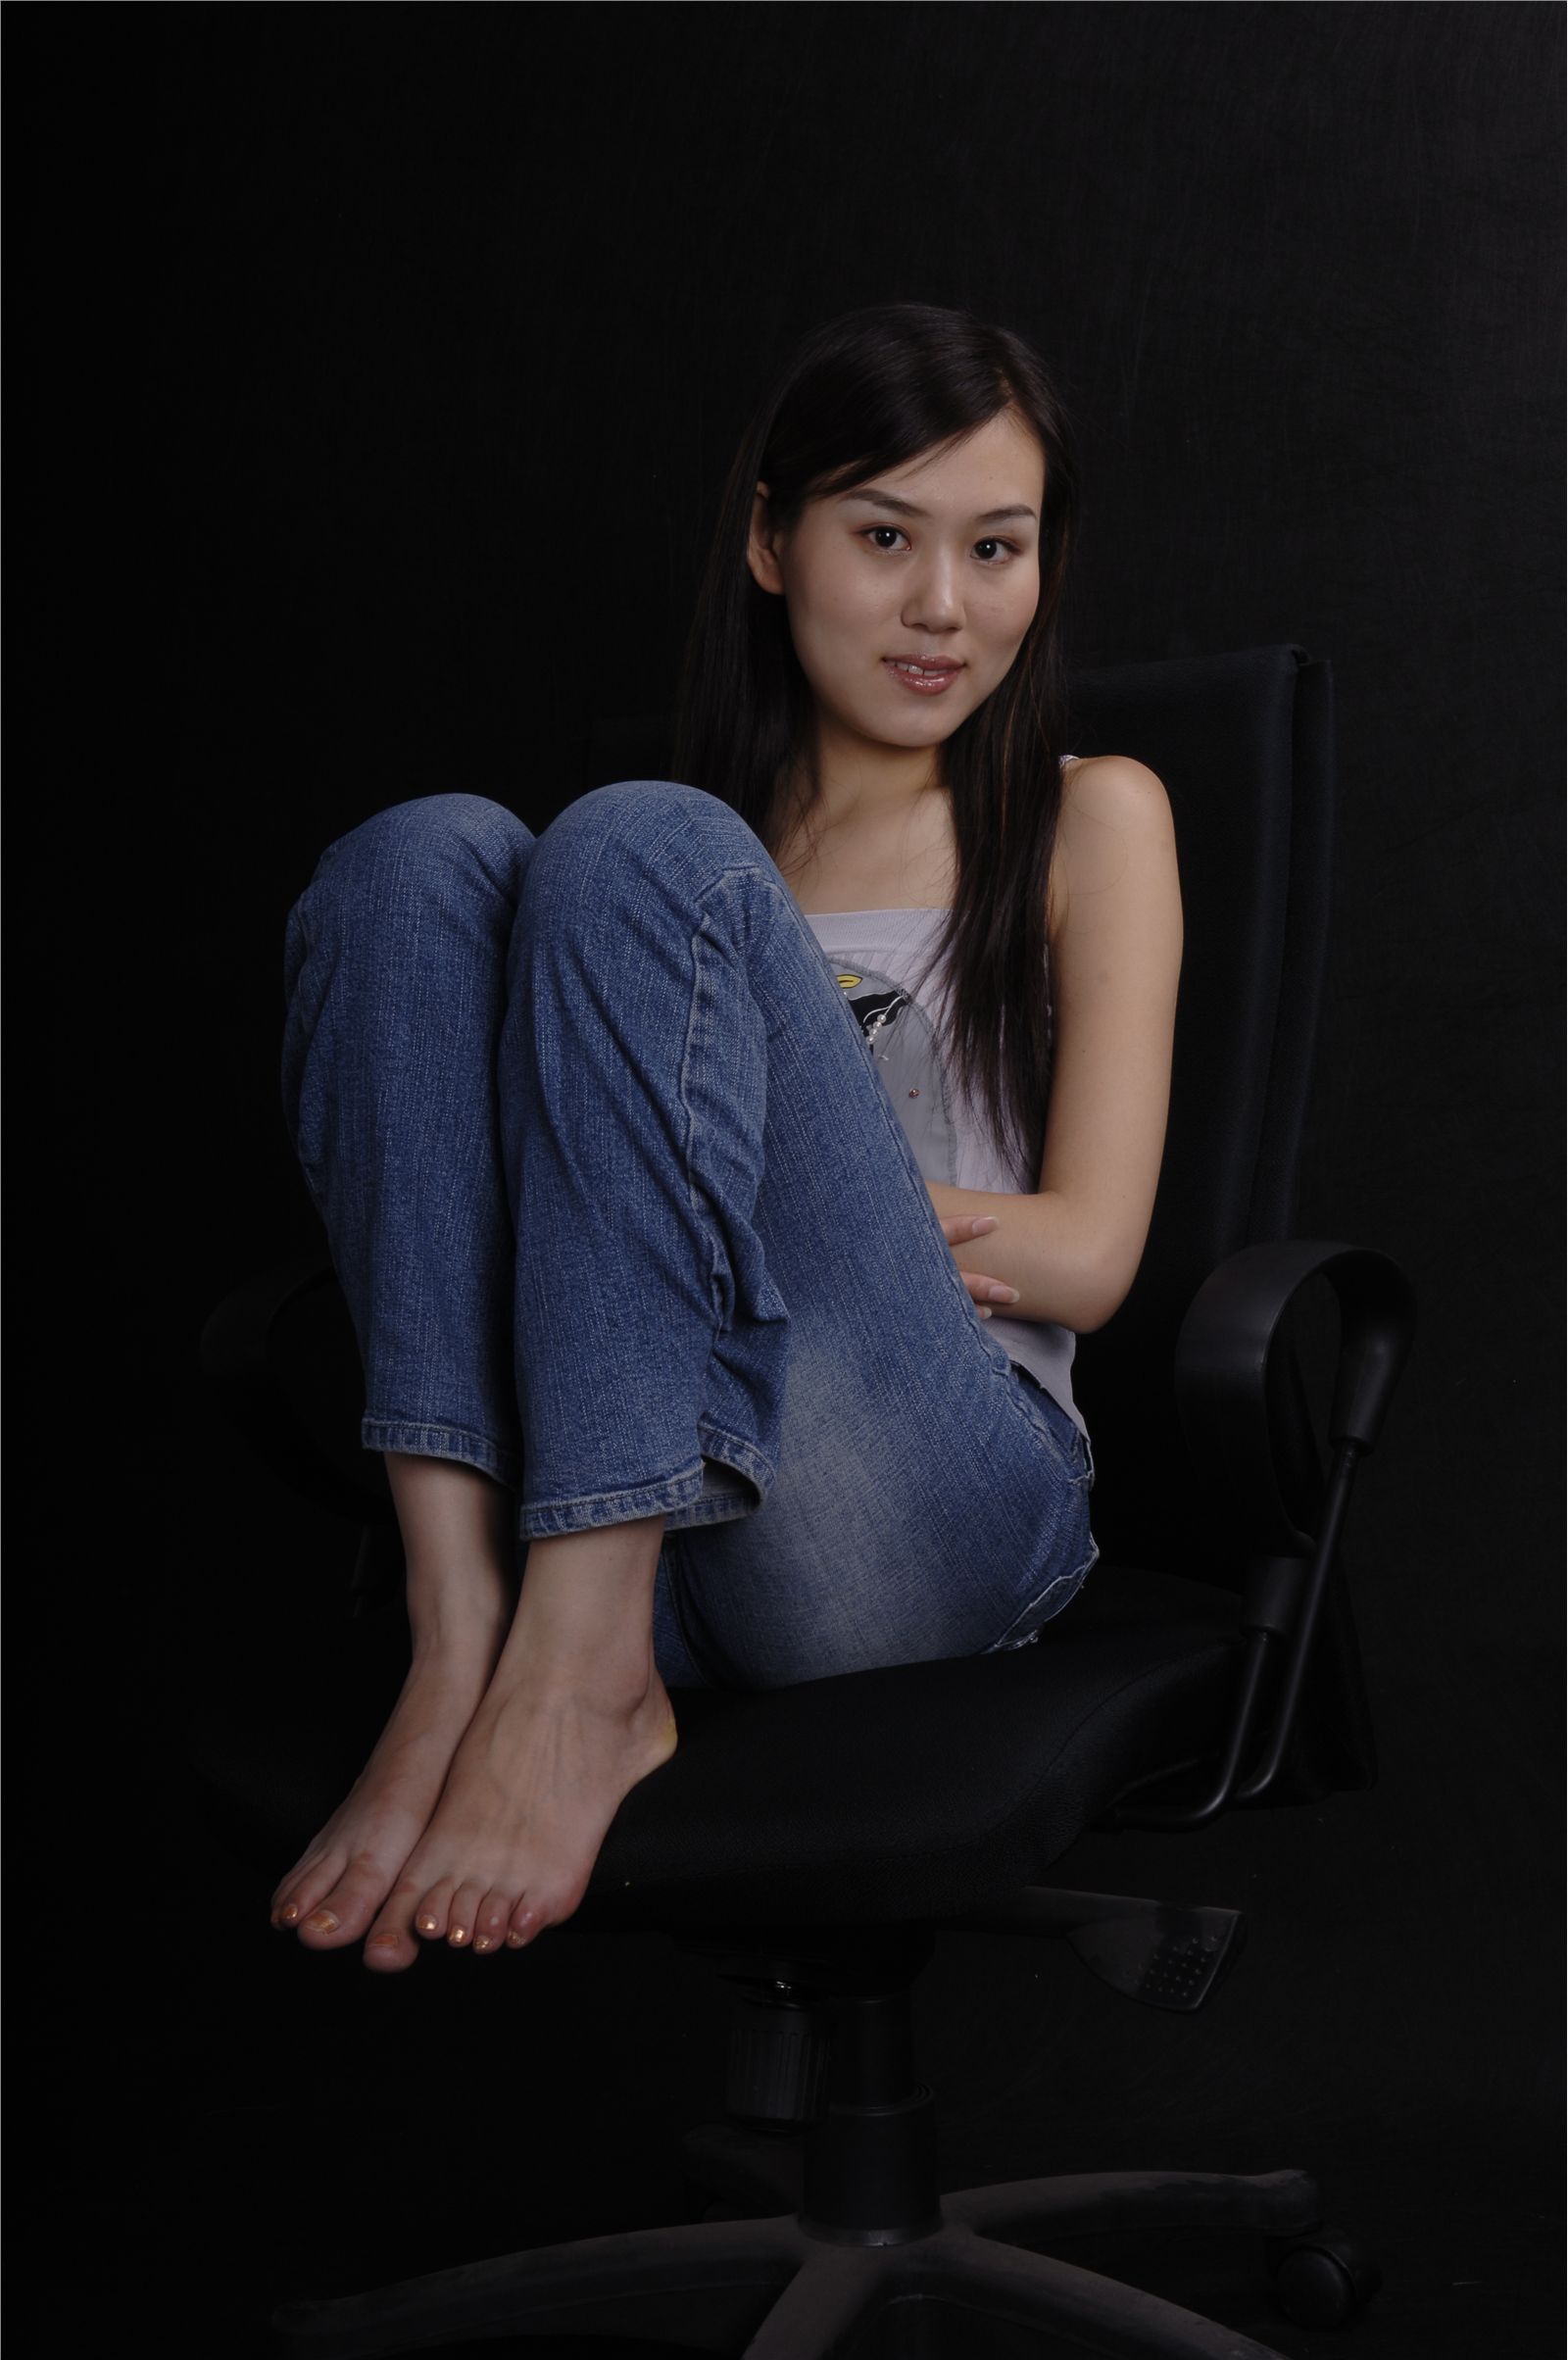 Zhonggaoyi micall original 407m domestic beauty silk stockings photo set